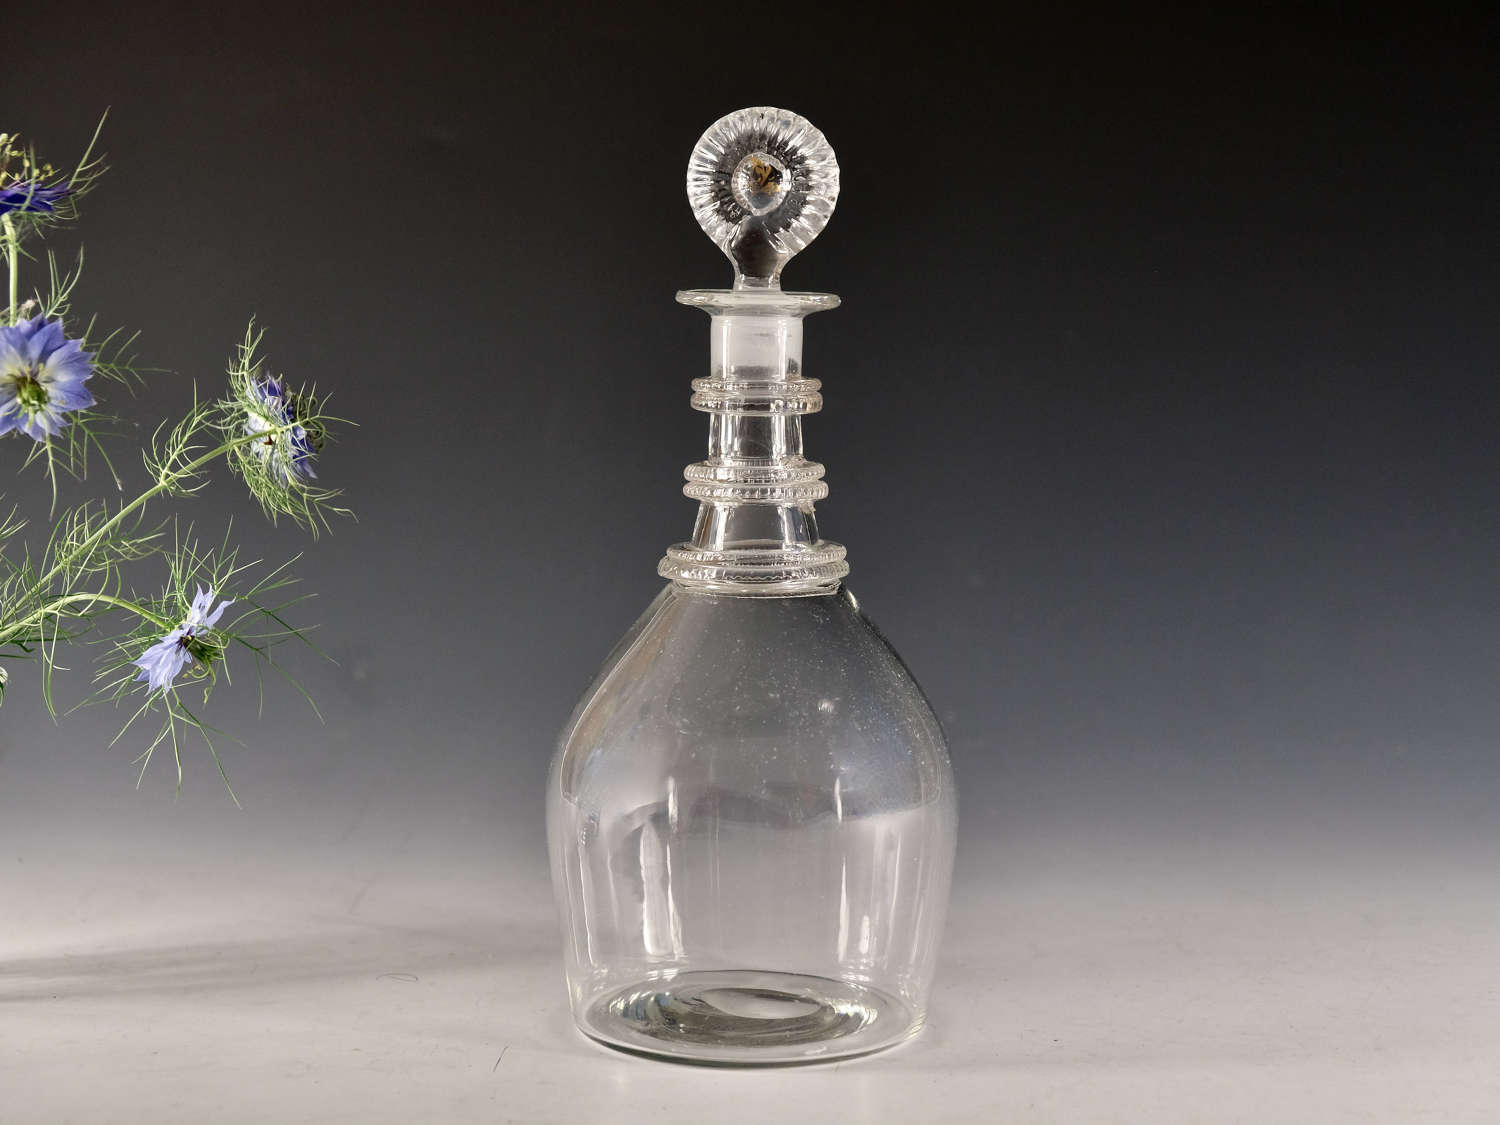 Antique glass - decanter Irish c1820